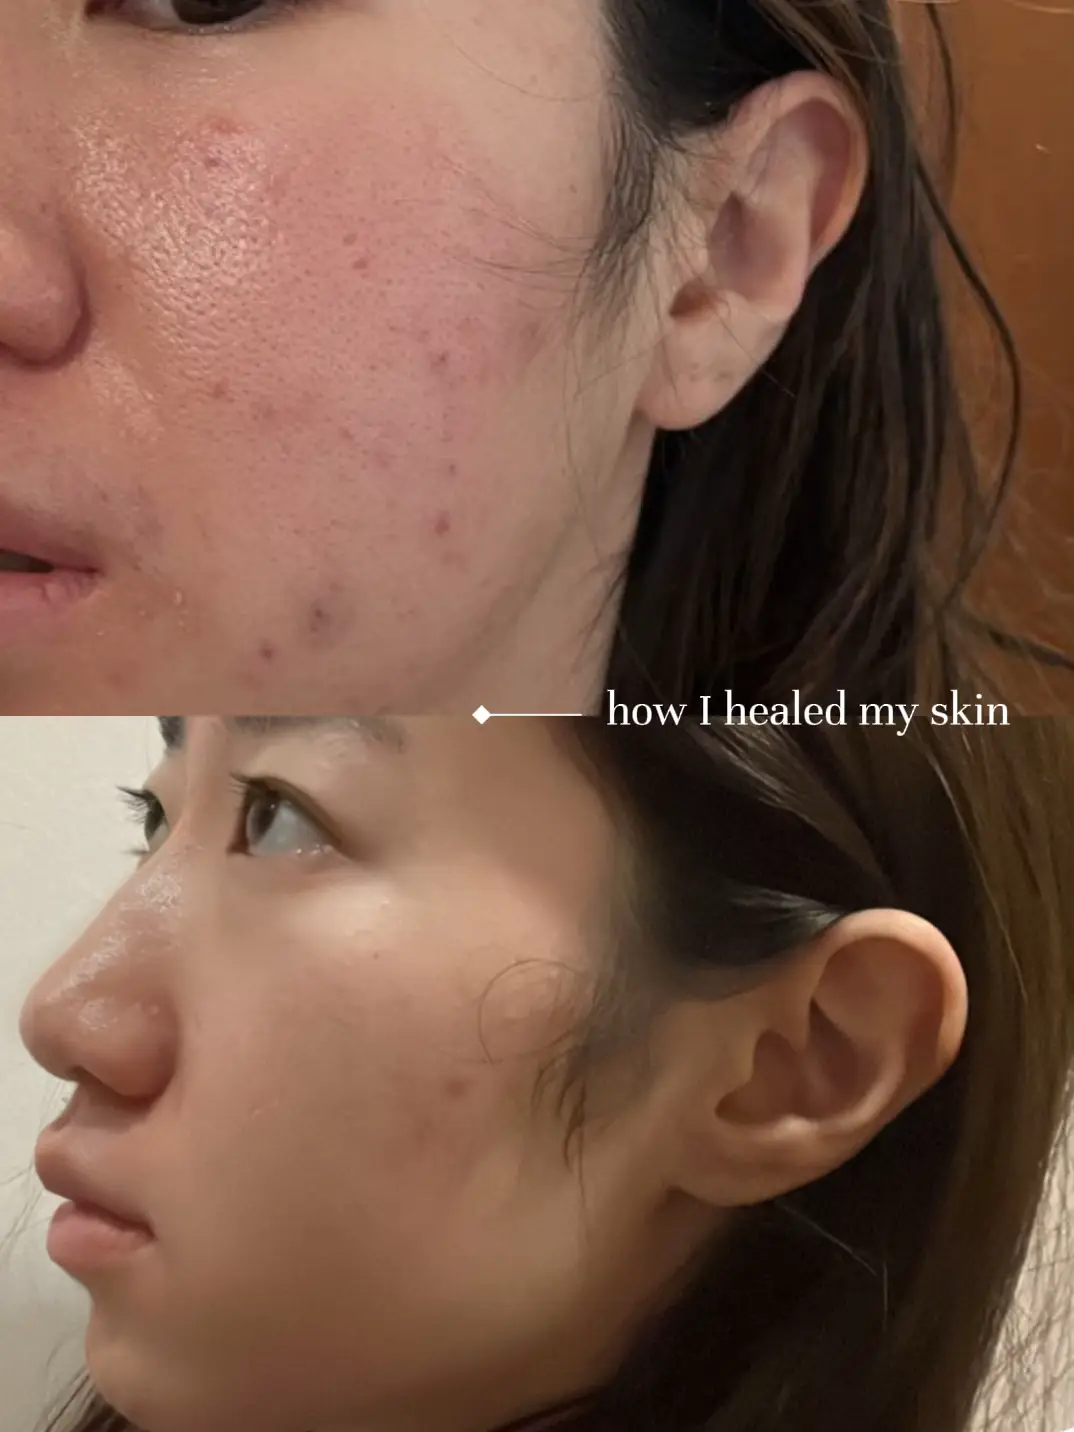 how I healed my damaged skin barrier💡's images(0)